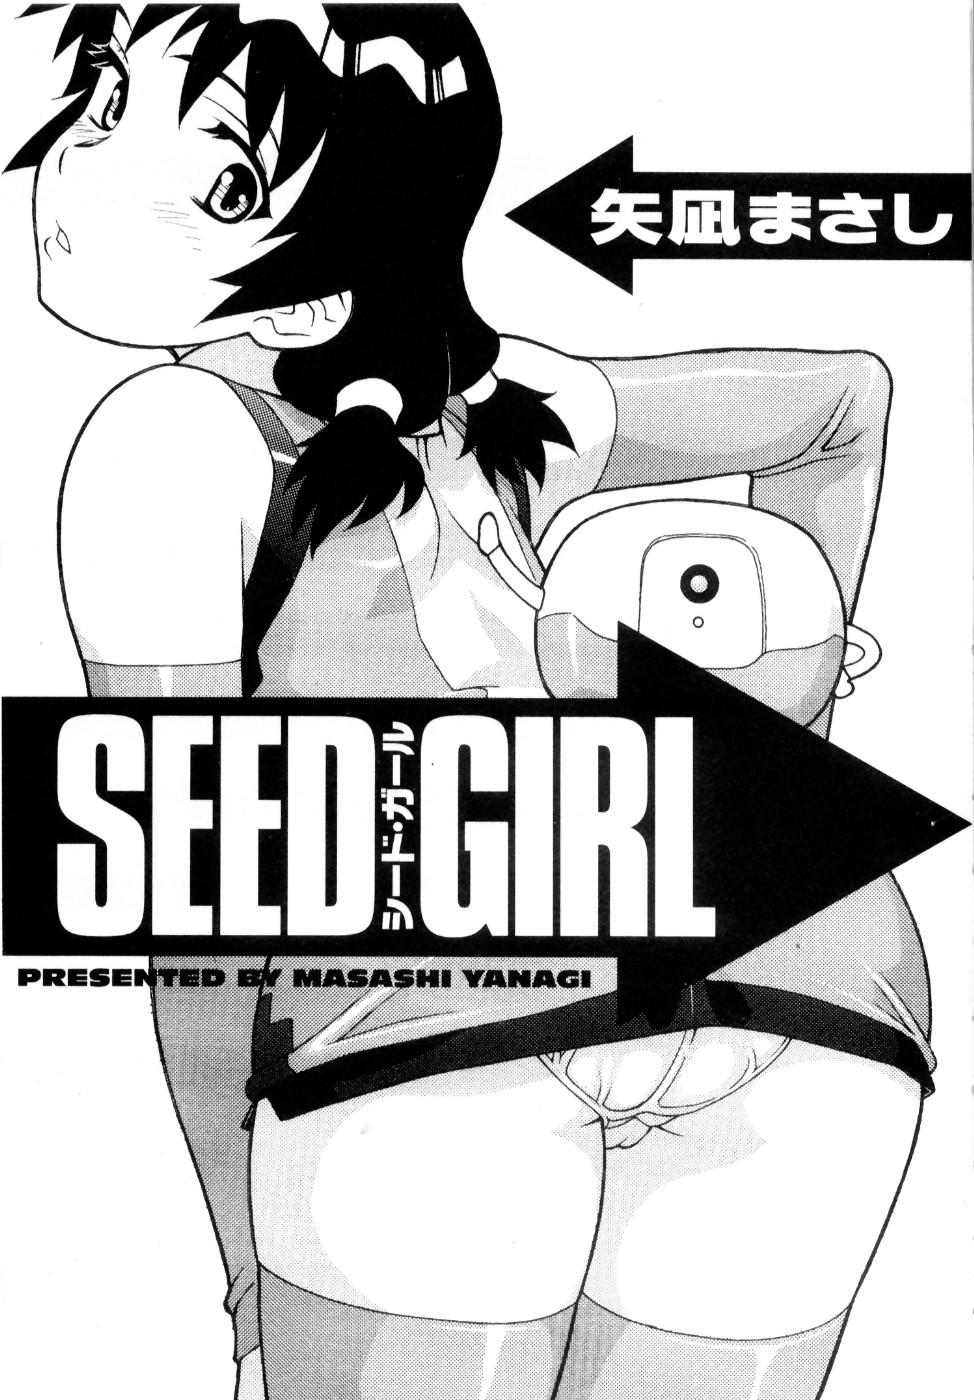 Seed Girl 5